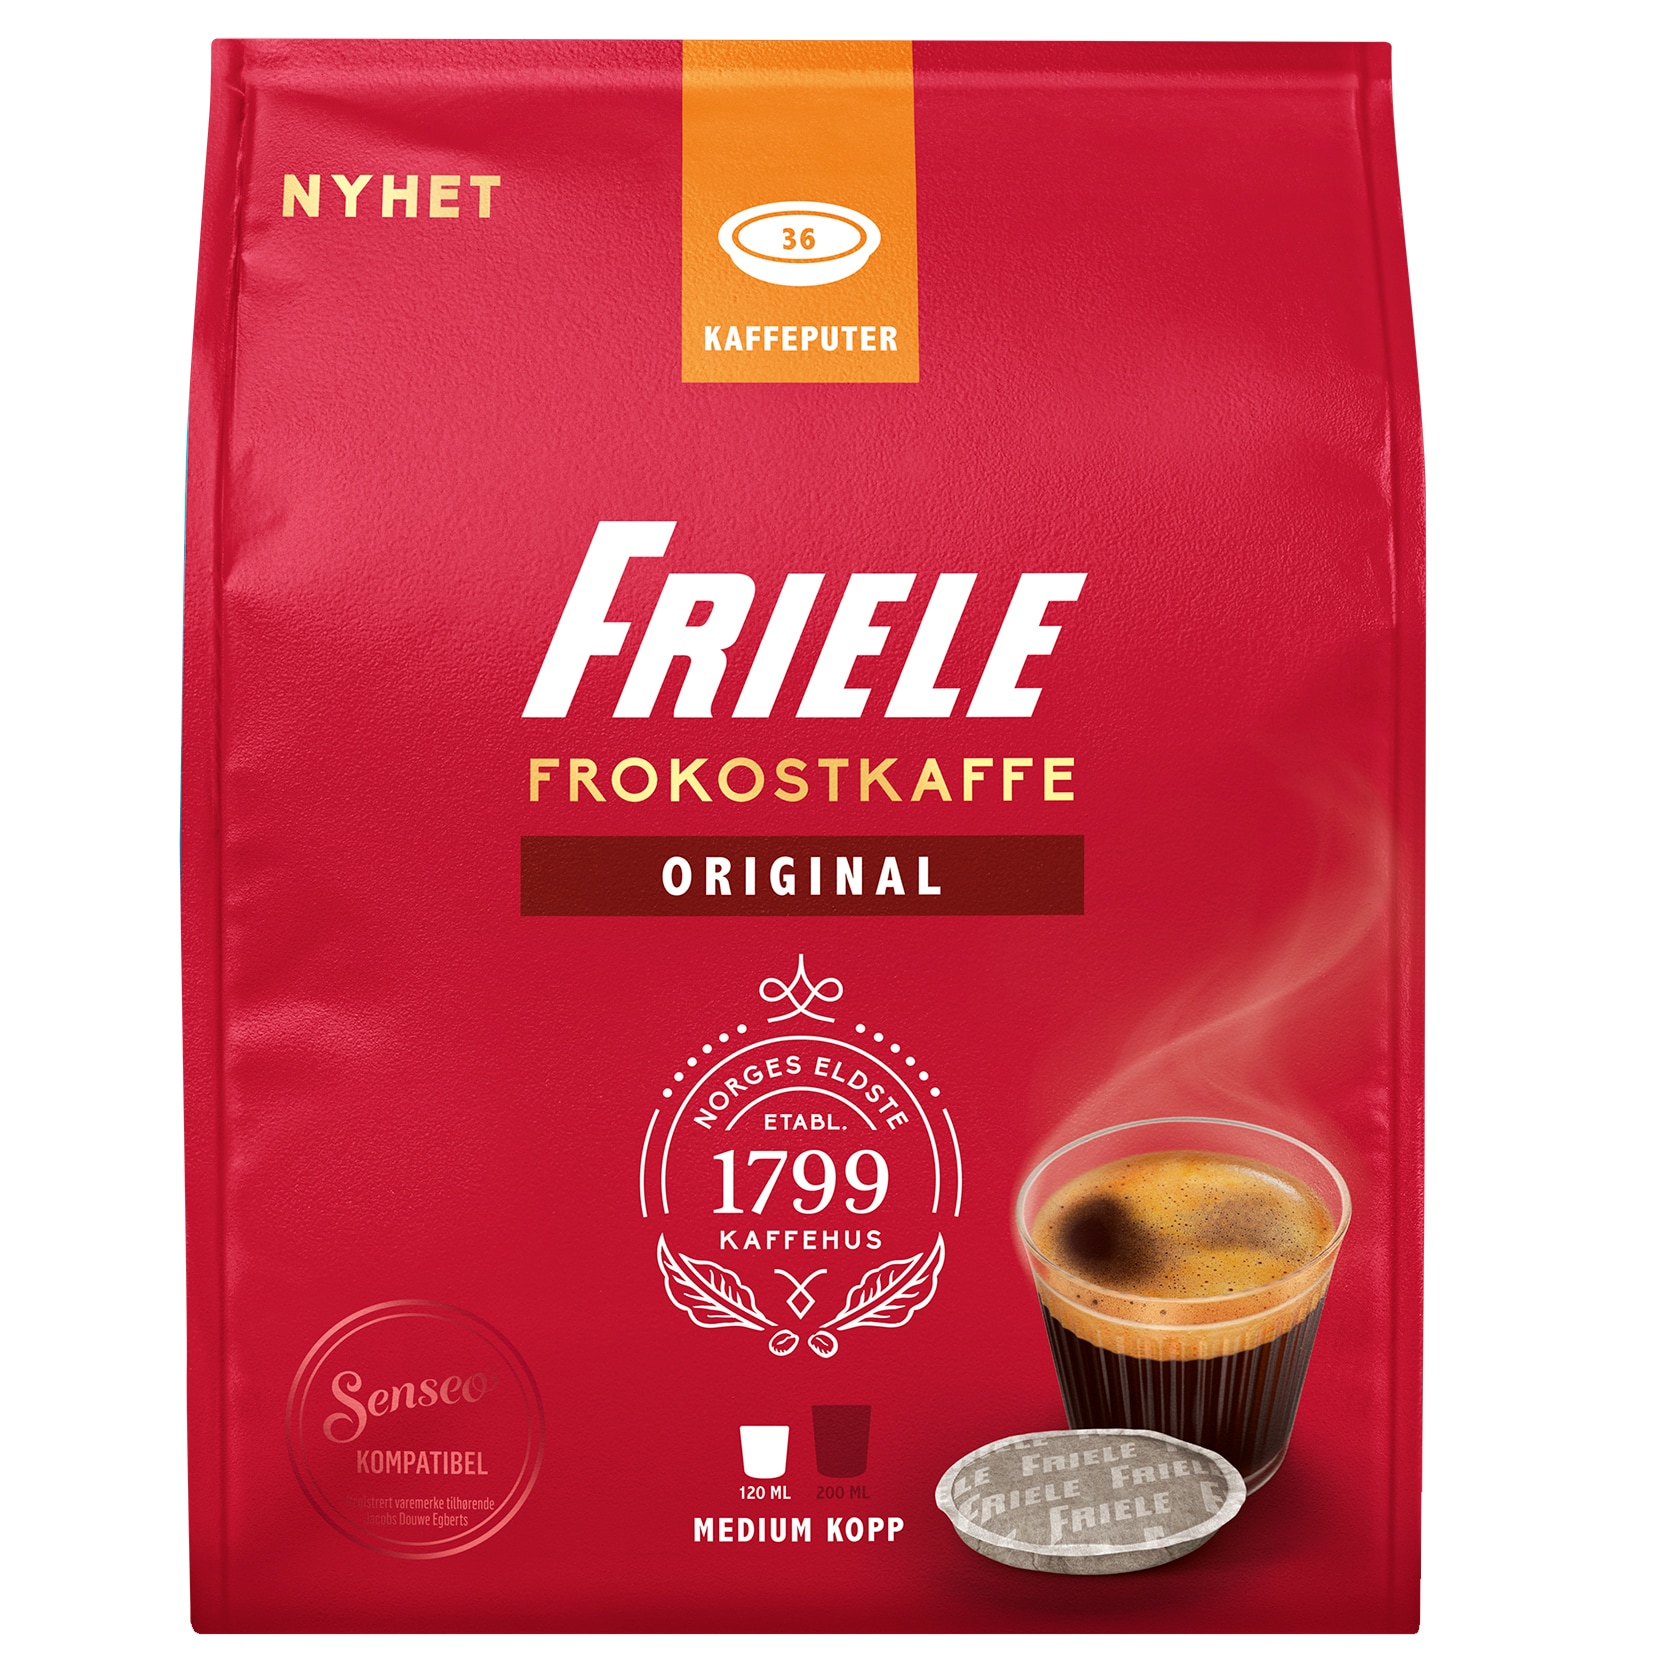 Friele Standard kaffekapsler 4041740 (36 kapsler) thumbnail